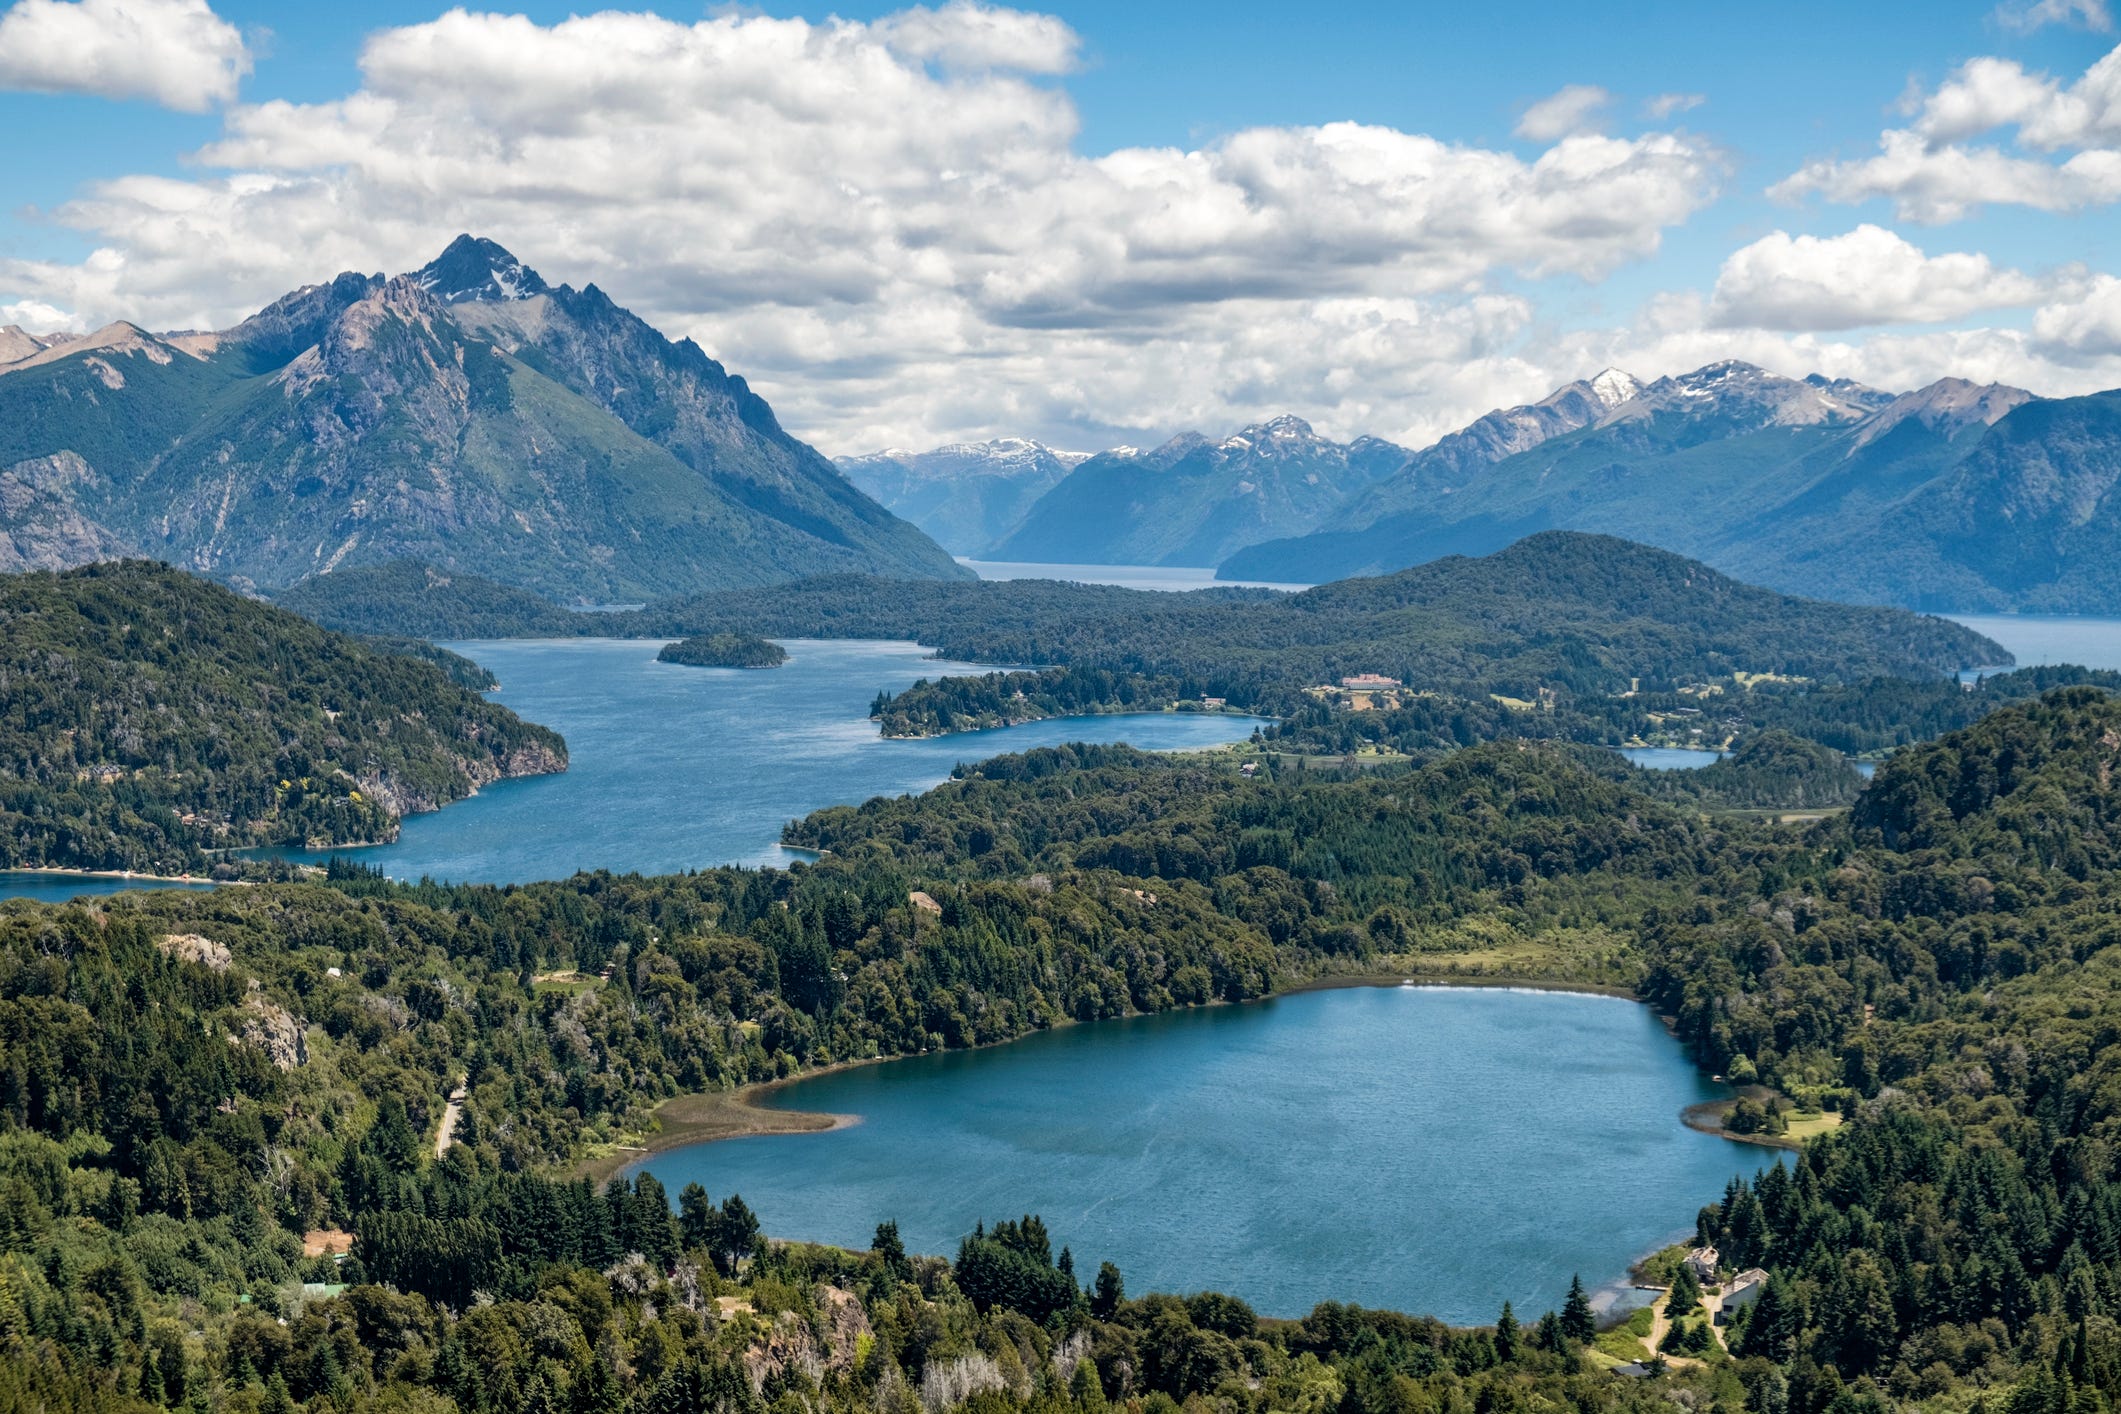 Große Seen und Berge in der Nähe von Bariloche, Argentinien.